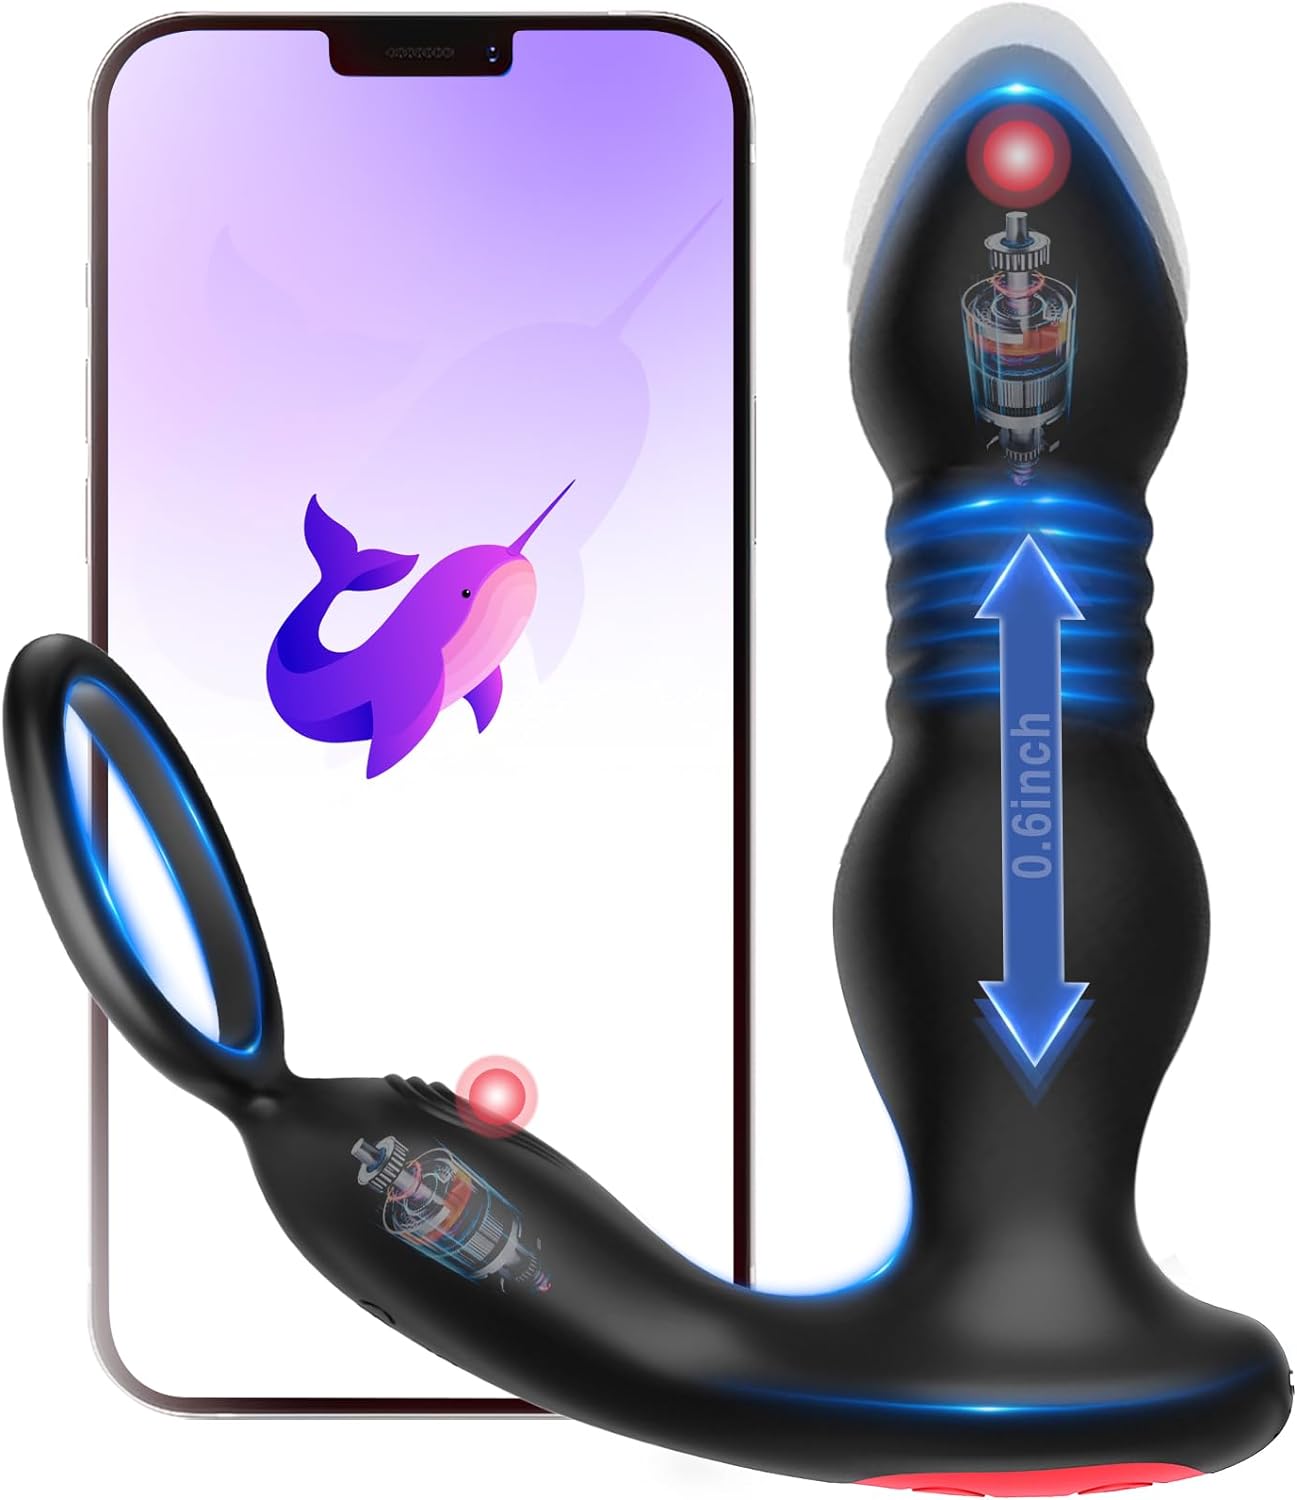 Estimulador de prostata con anillo vibrador, juguete sexual.